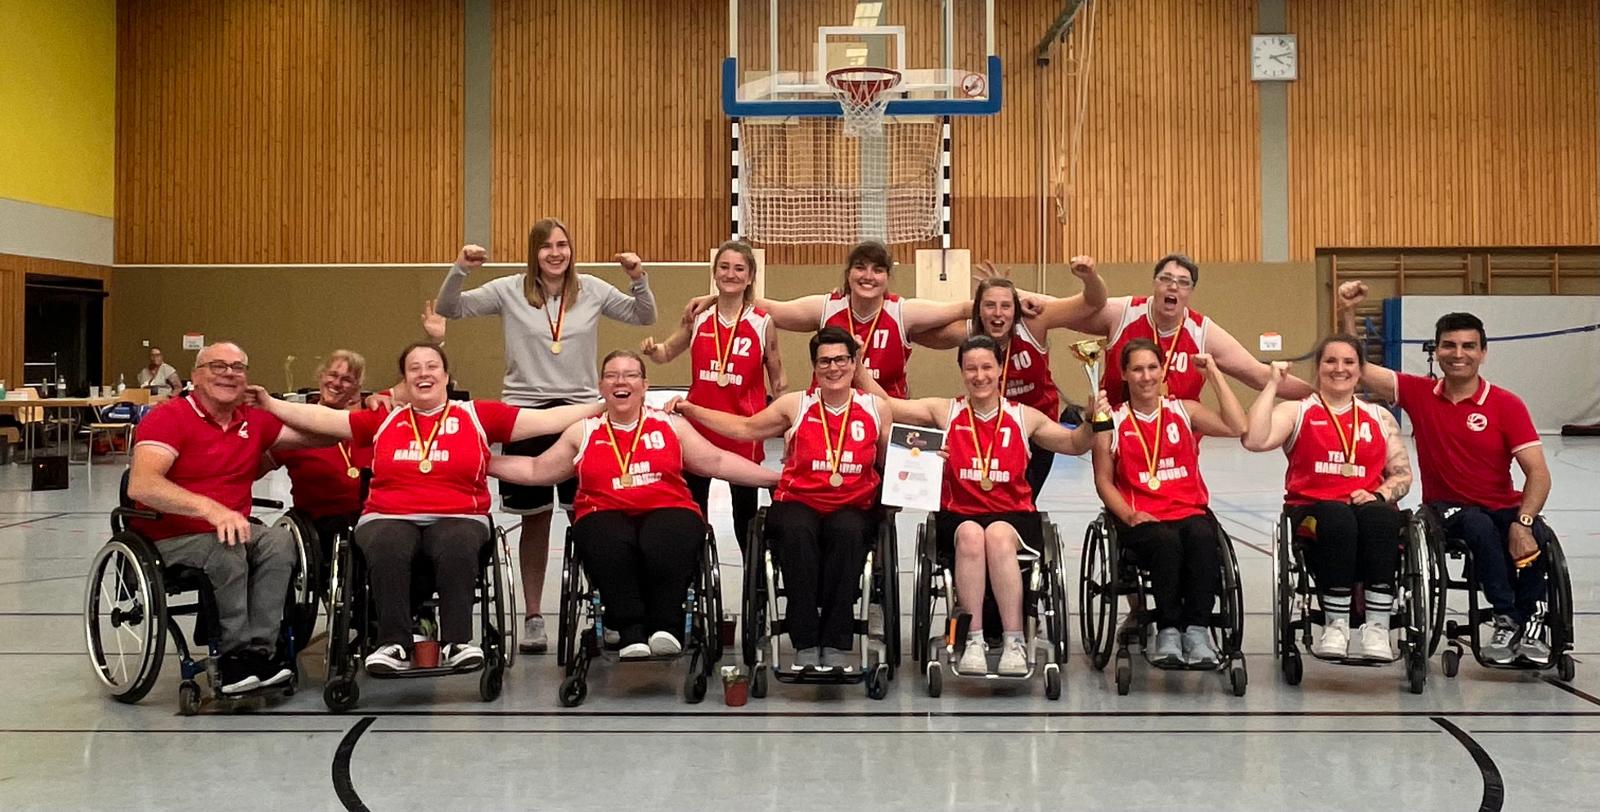 Das Team der Rollstuhbasketball-Nationalmannschaft mit Trainer:innen Team. Alle tragen das National-Trikot, halten sich in den Armen und lächeln.